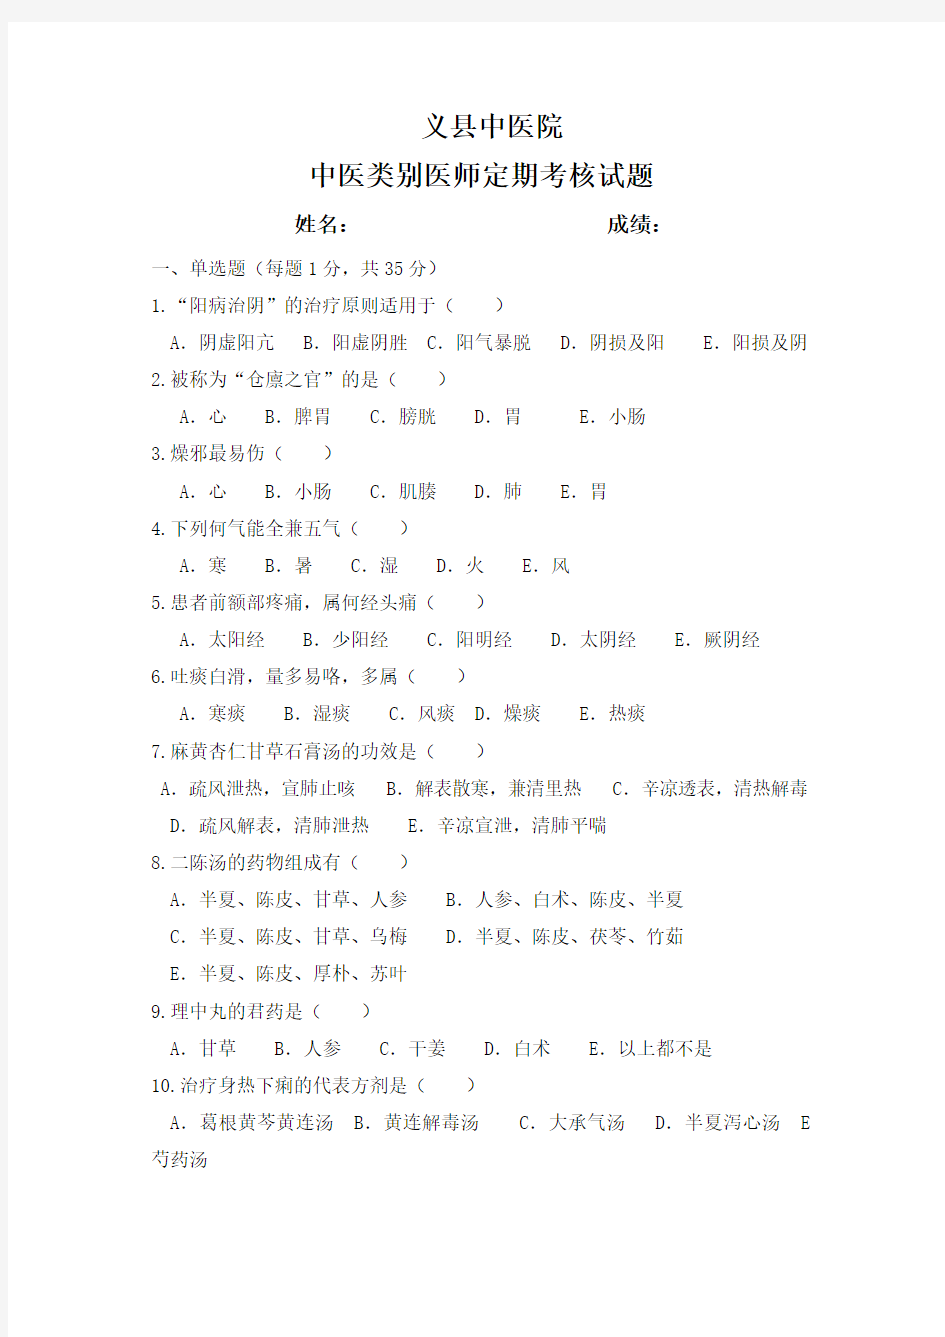 中医类别医师定期考核试题2.3.1